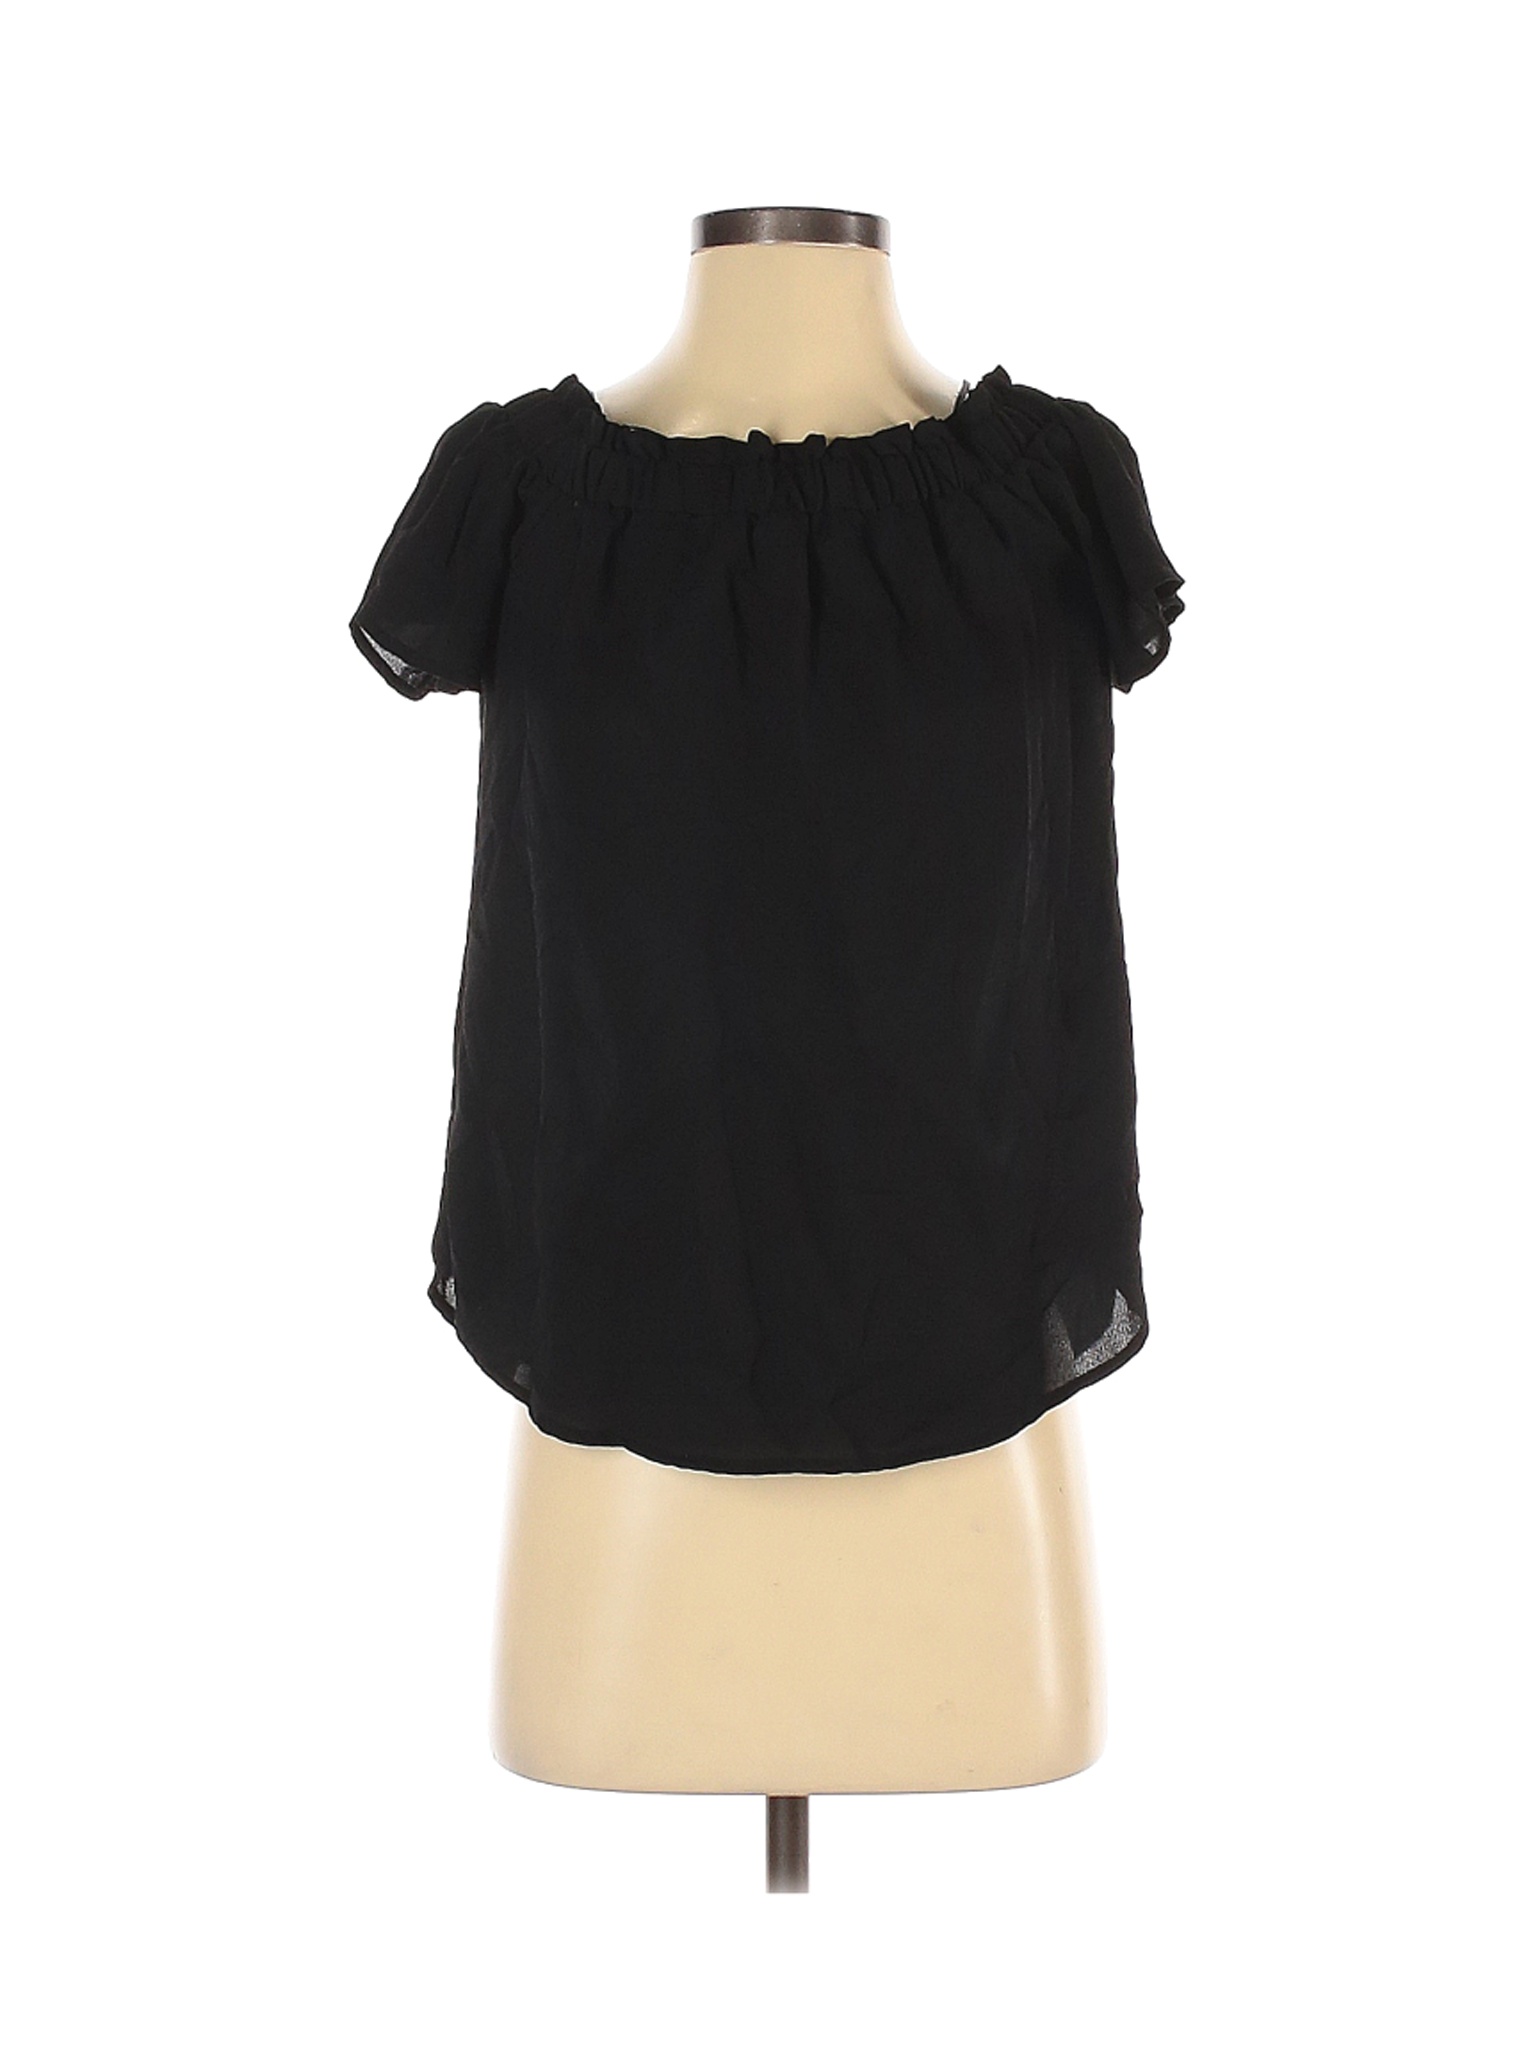 Sienna Sky Women Black Short Sleeve Blouse S | eBay